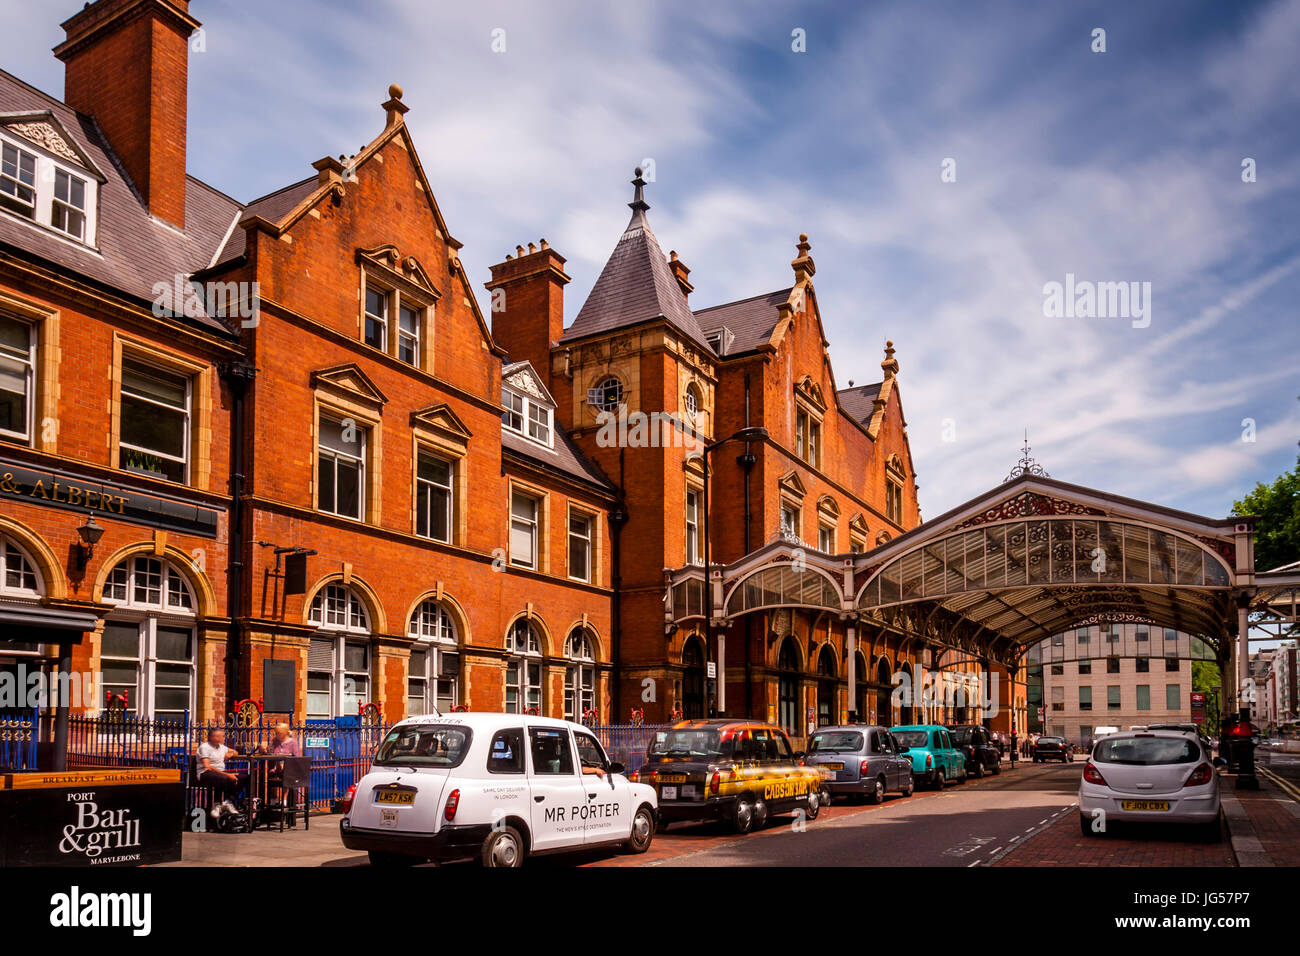 Marylebone Train Station, London, UK Stock Photo